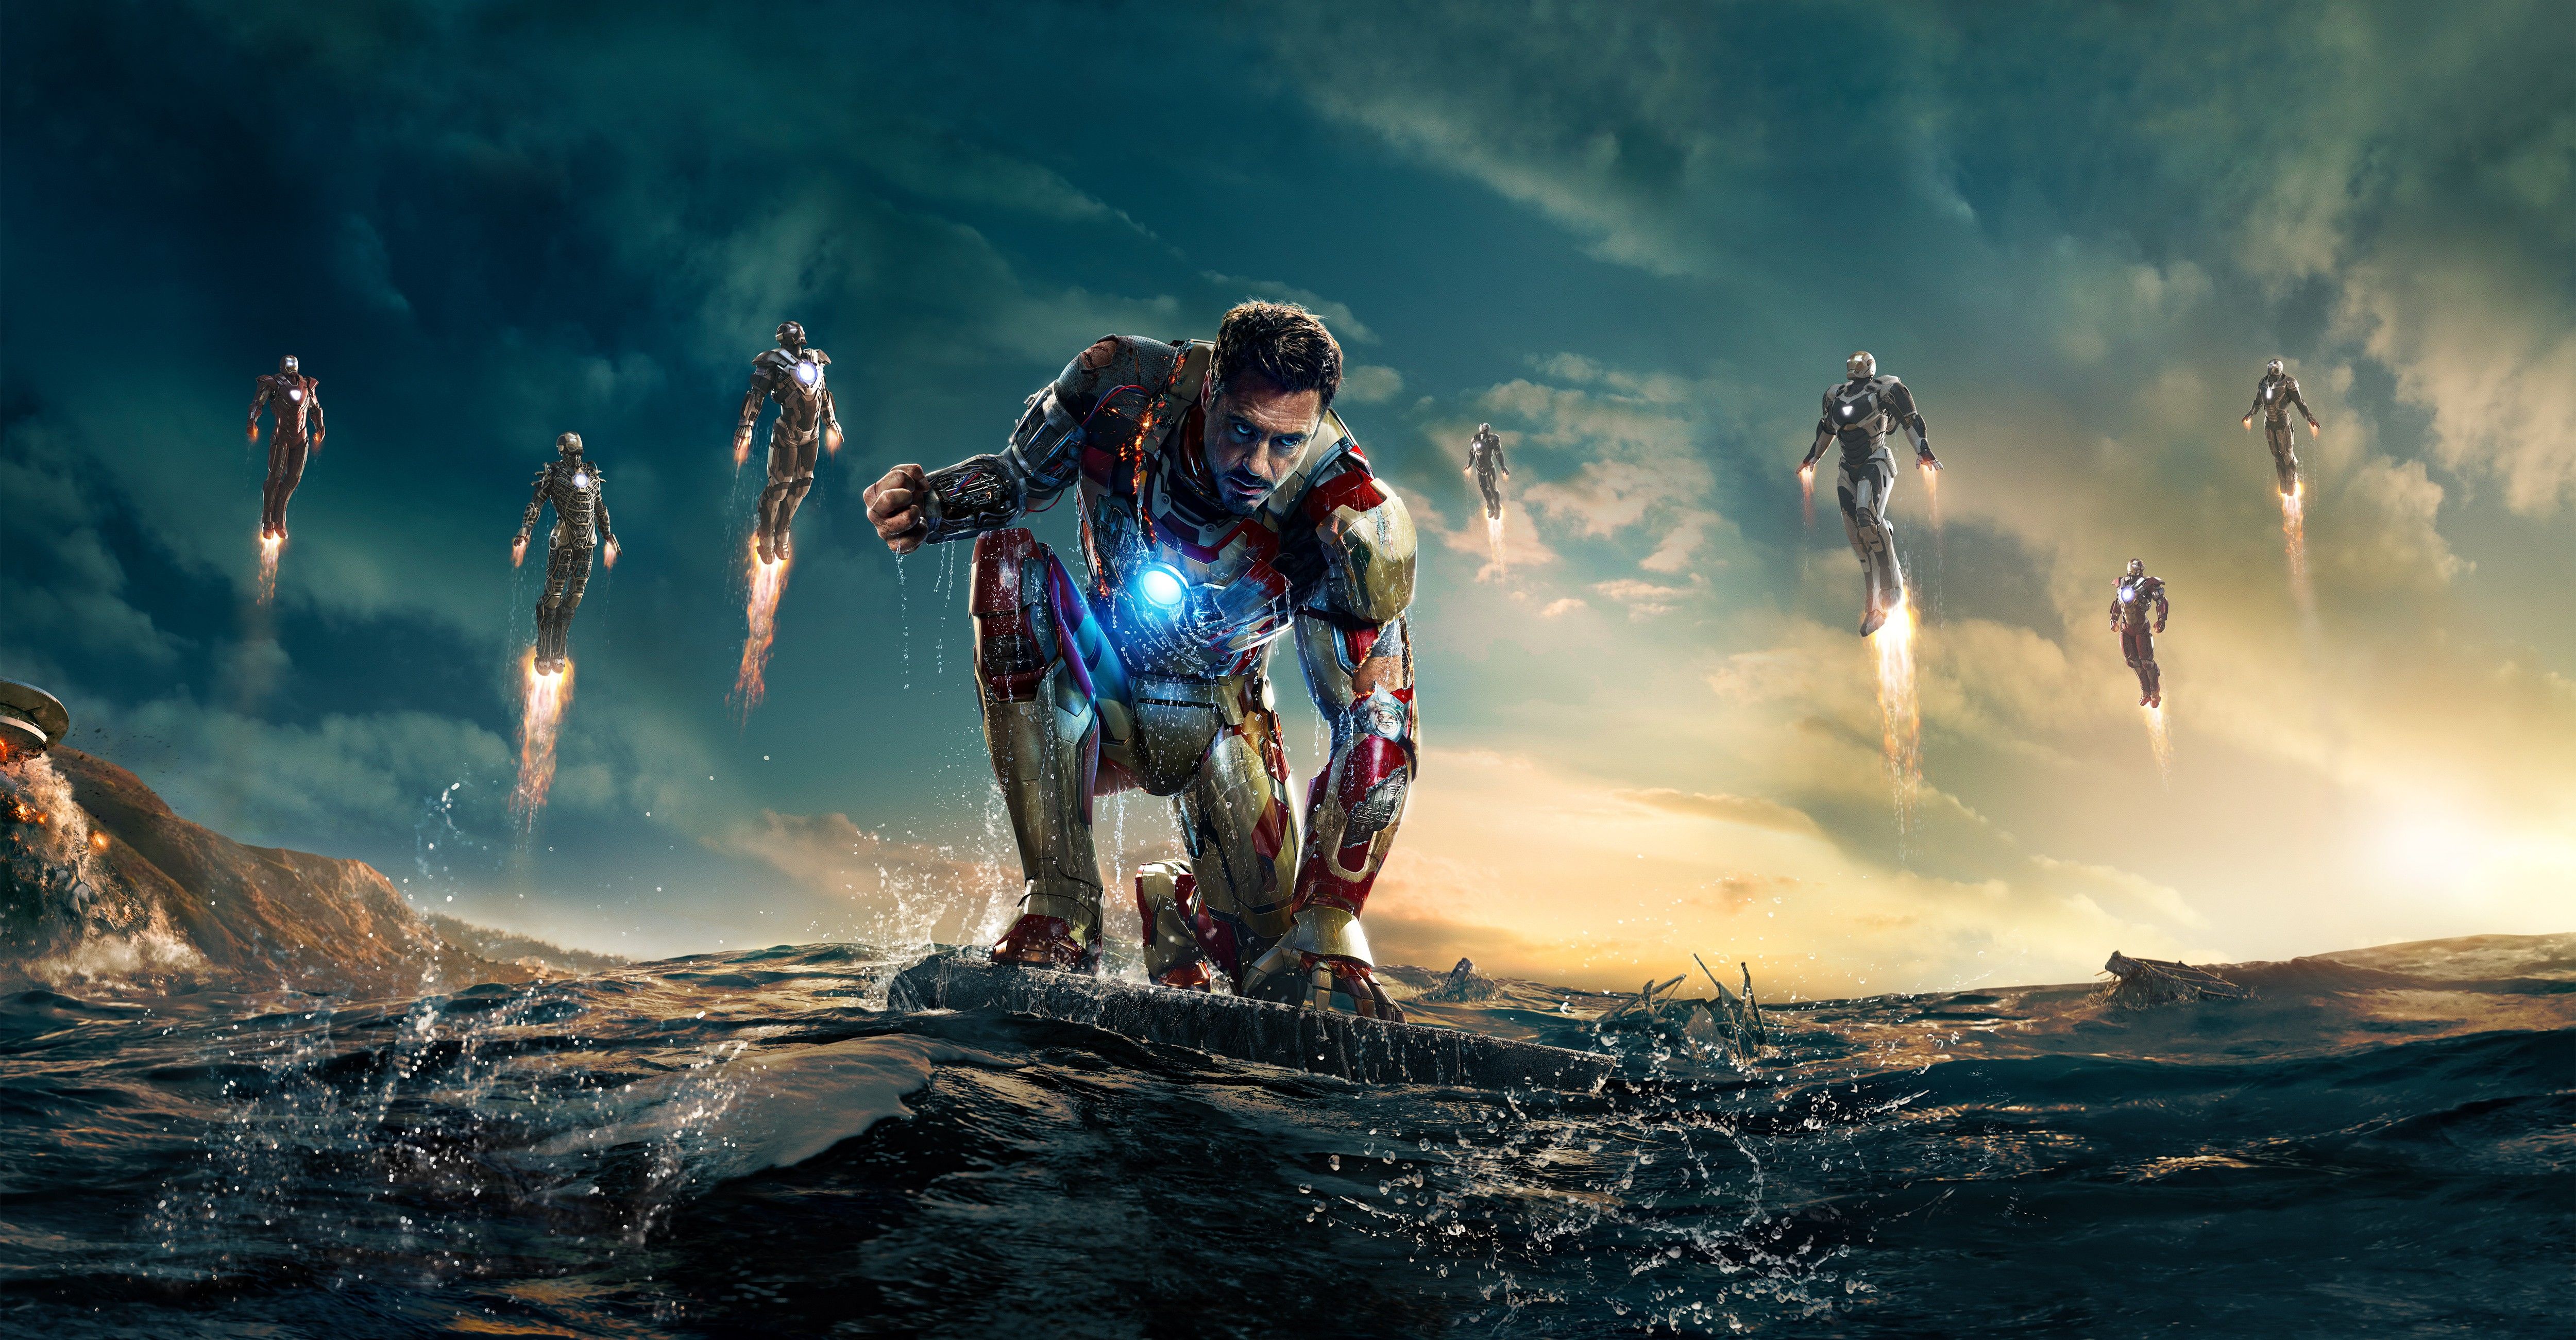 Фул эйч. Железный человек 3. Тони Старк. «Железный человек 3» (Iron man 3, 2013).